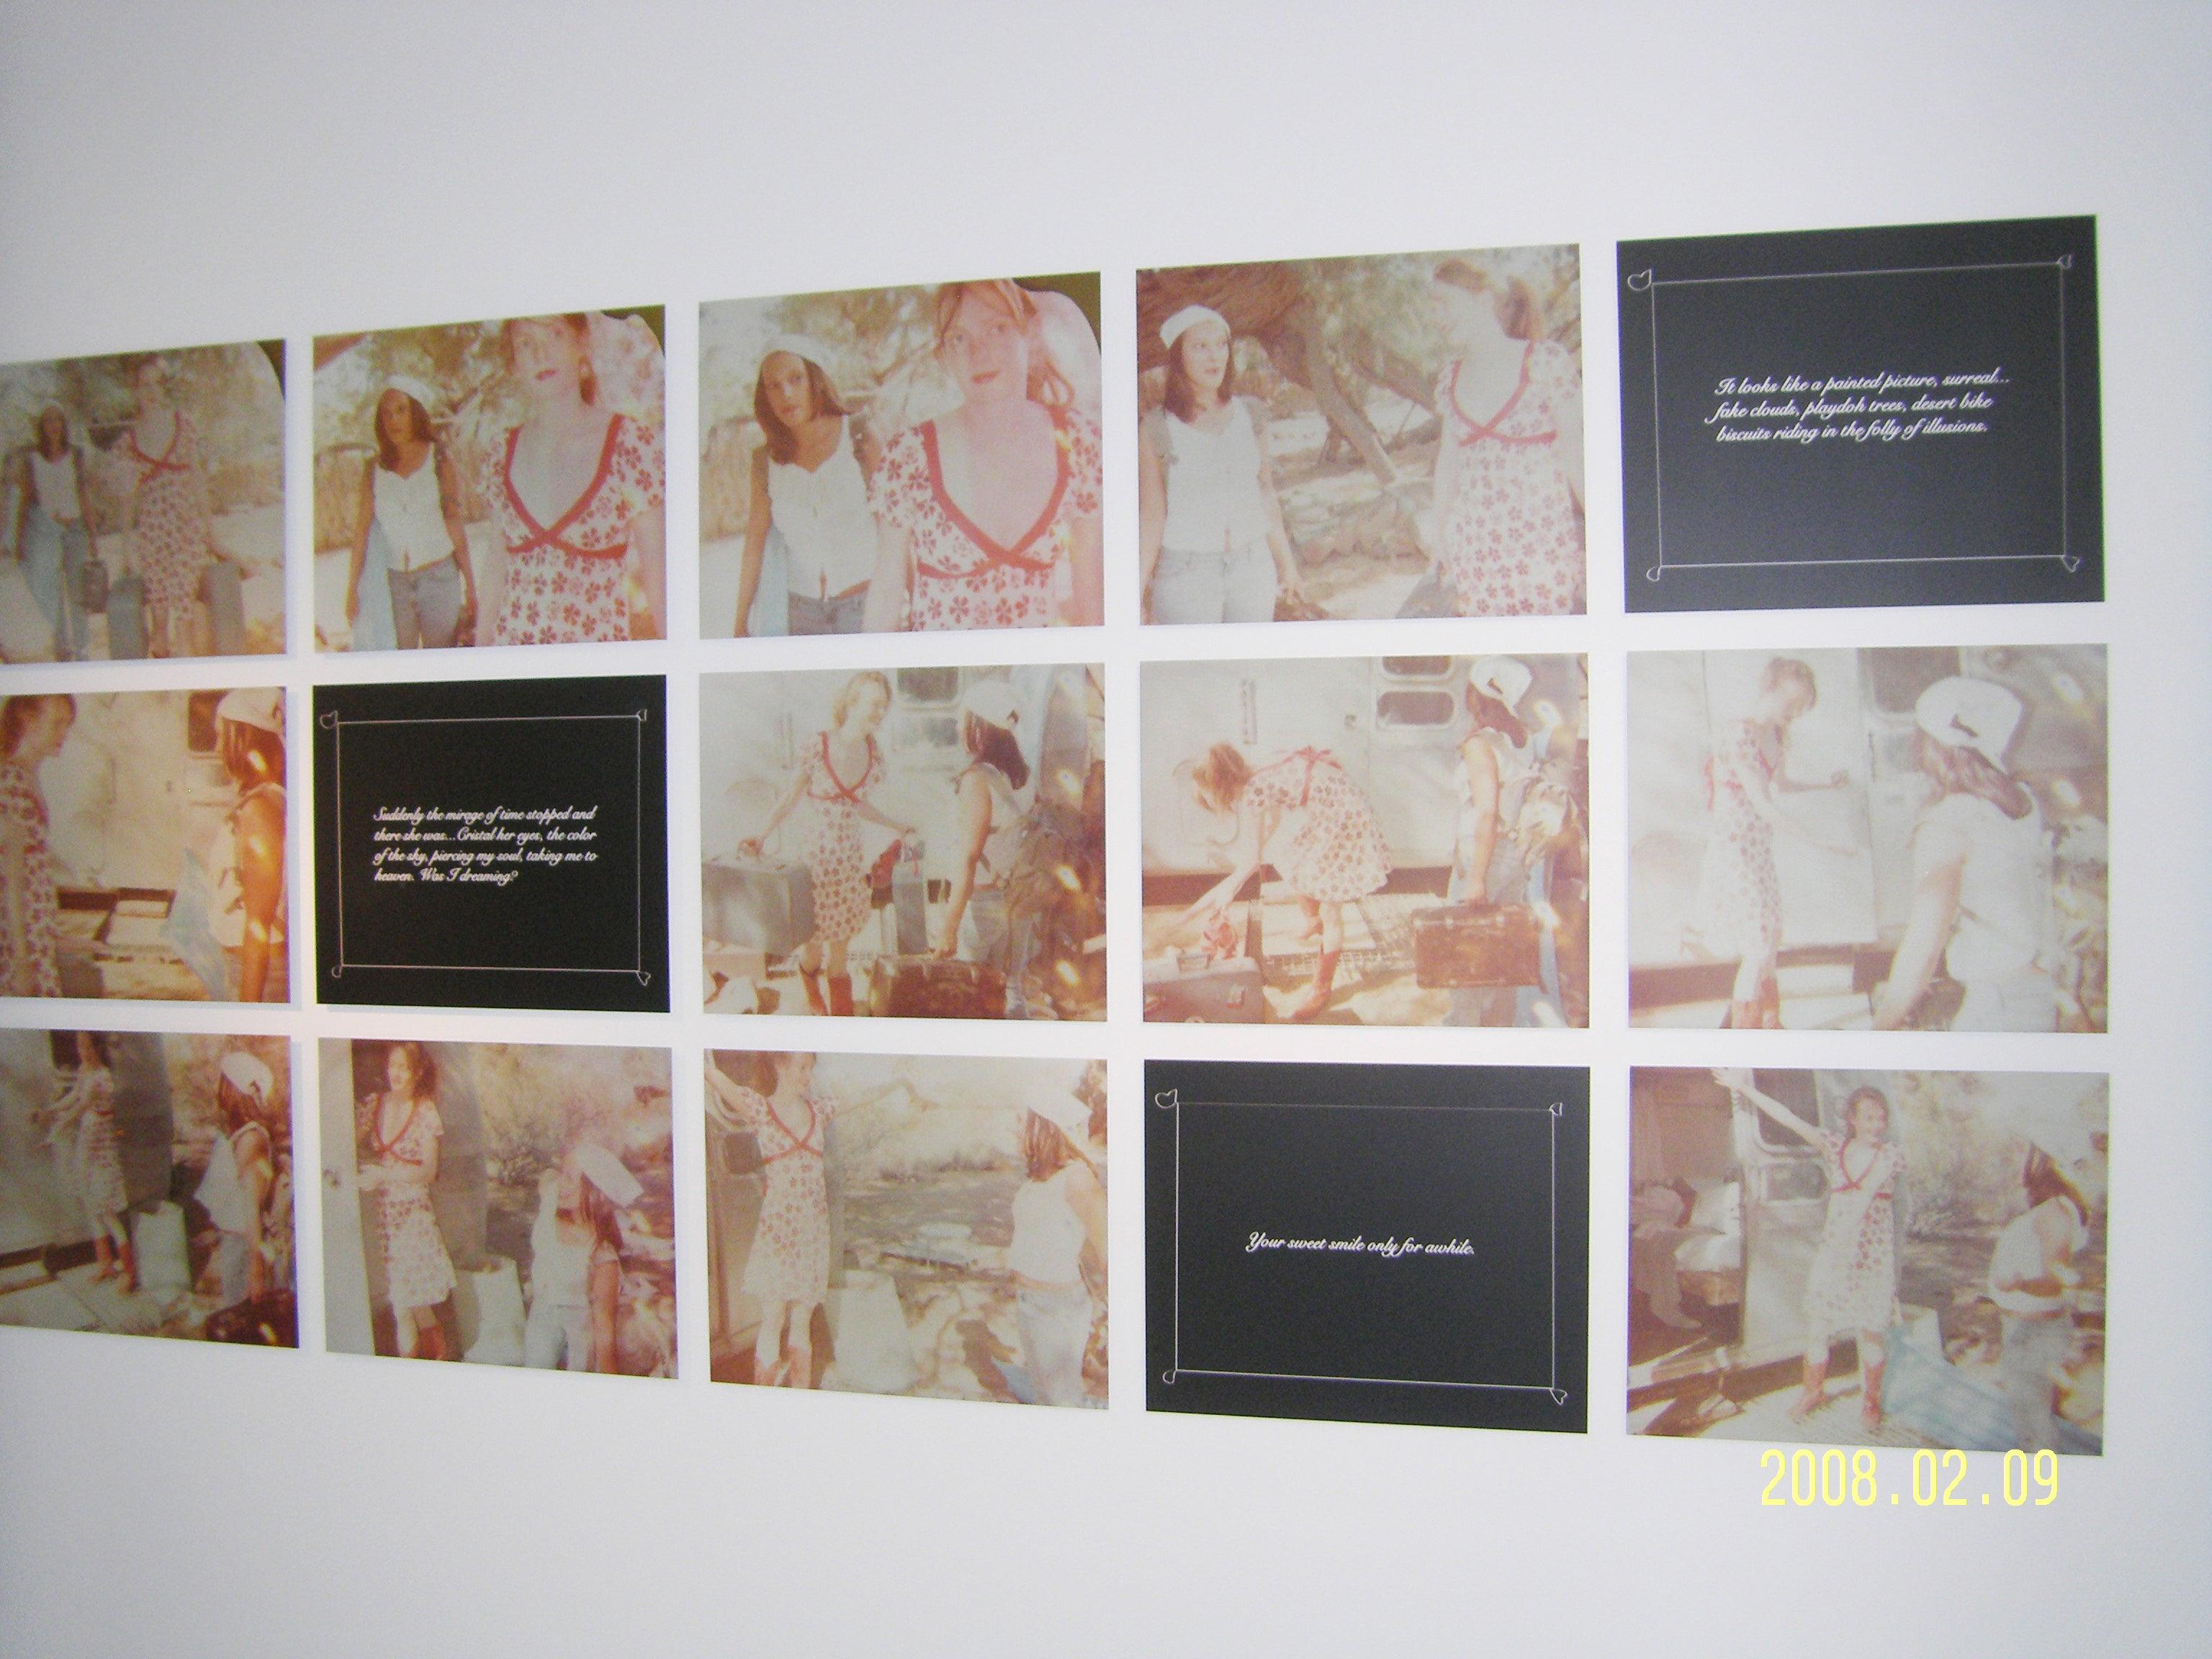 Gemeinsam einziehen (bis dass der Tod uns scheidet) - Installation - 2008

Auflage von 5.
16 analoge C-Prints, von der Künstlerin handgedruckt auf Fuji Crystal Archive Papier, basierend auf 13 Polaroids, 
Montiert auf Aluminium mit mattem UV-Schutz.